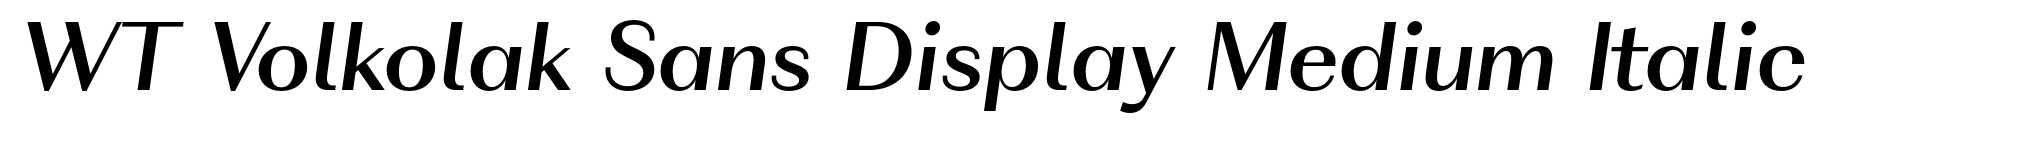 WT Volkolak Sans Display Medium Italic image